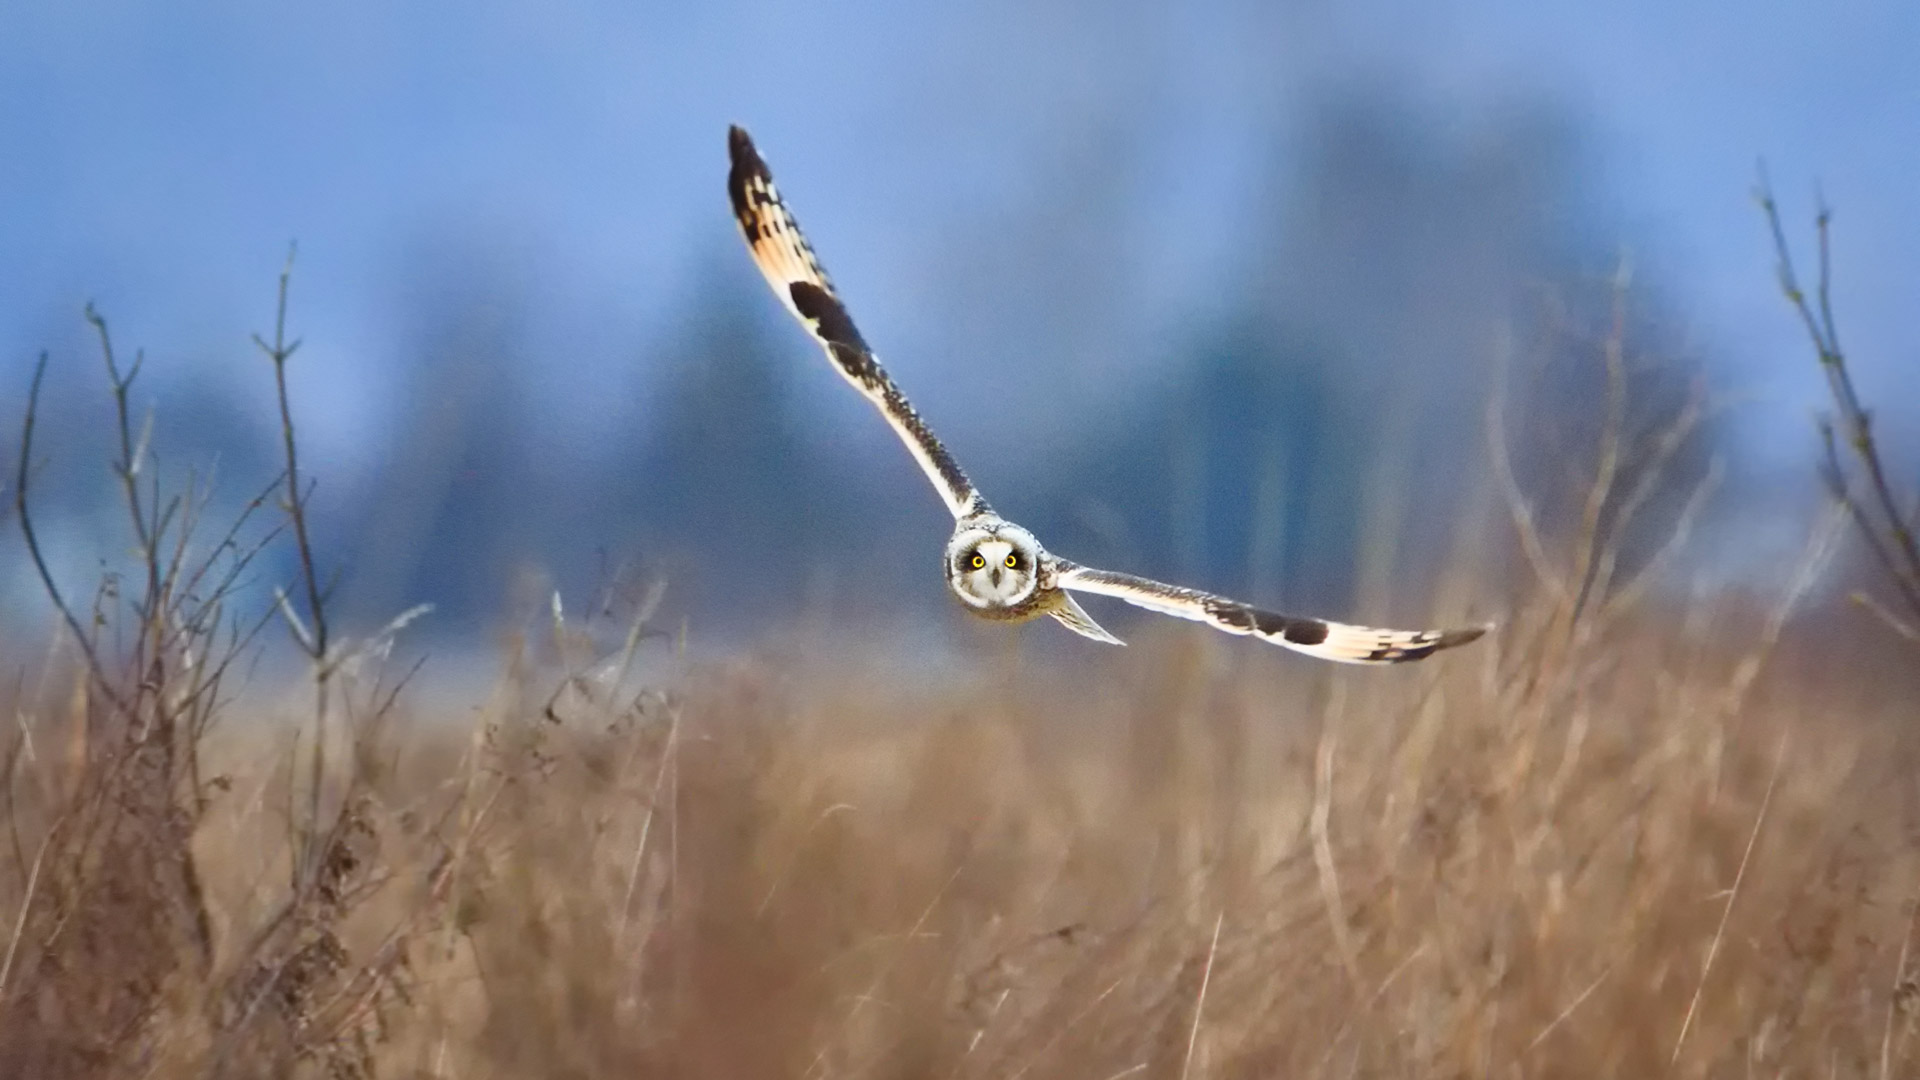 عکس و تصویر زمینه 4k خیره کننده از جغد زیبا و بازیگوش در حال پرواز